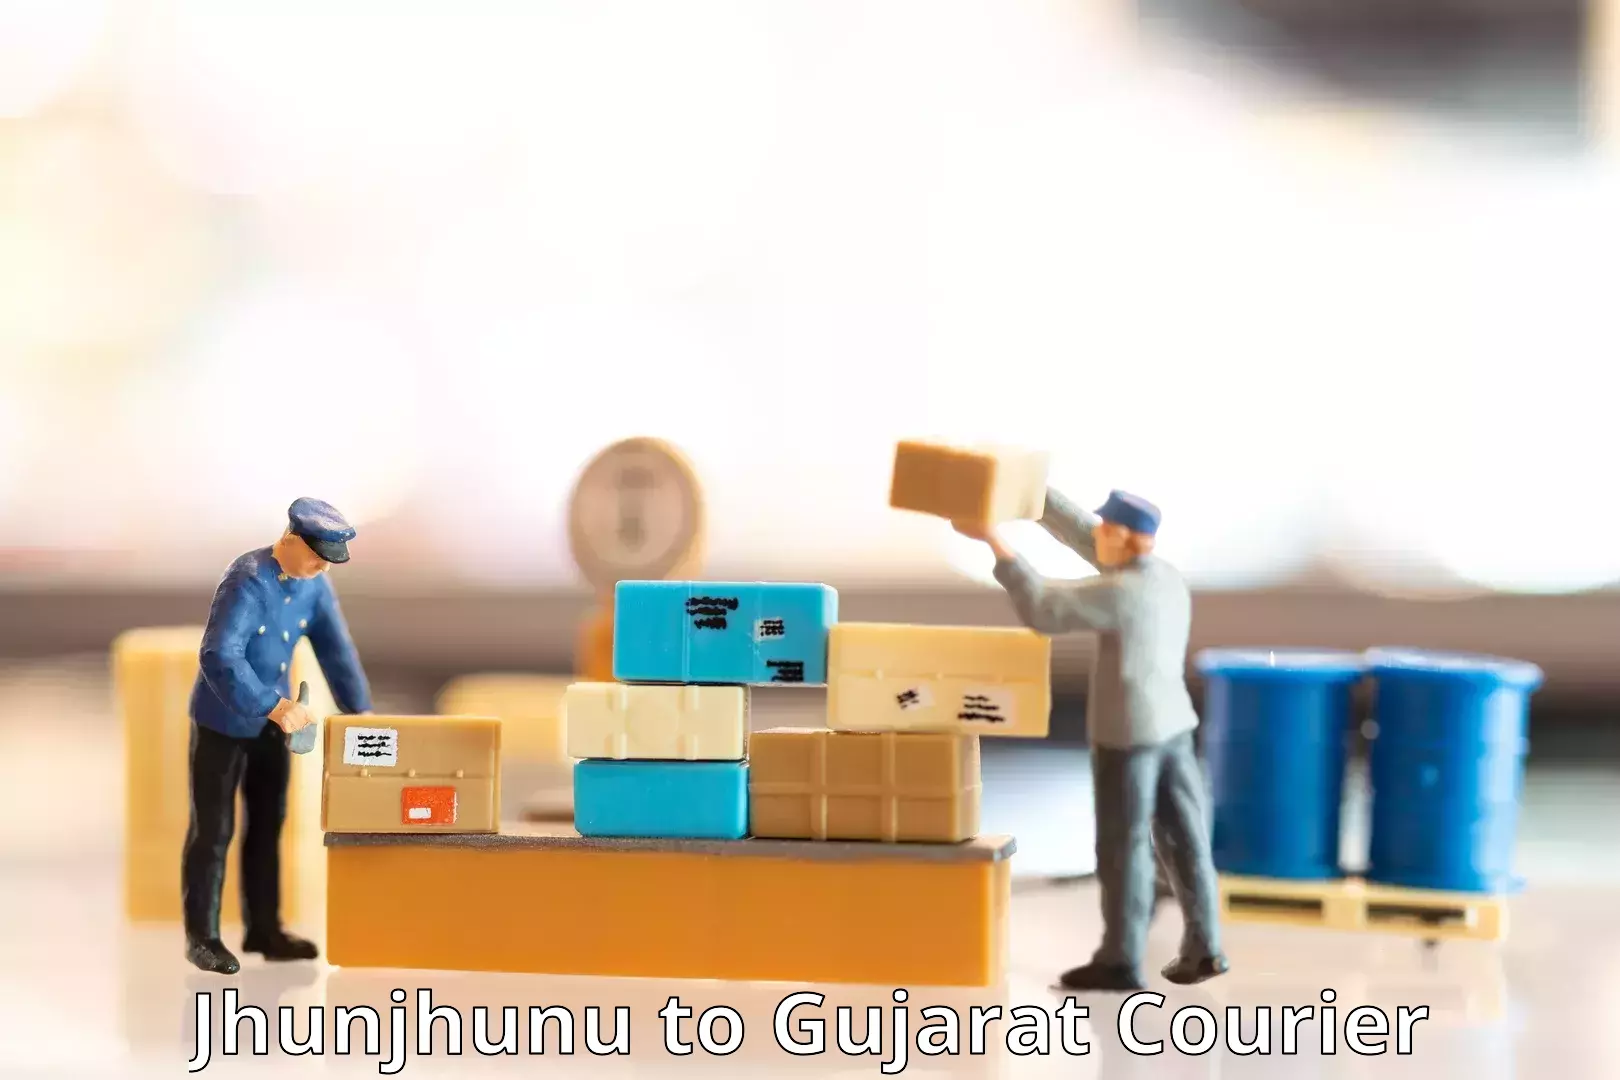 Postal and courier services Jhunjhunu to Ahmedabad